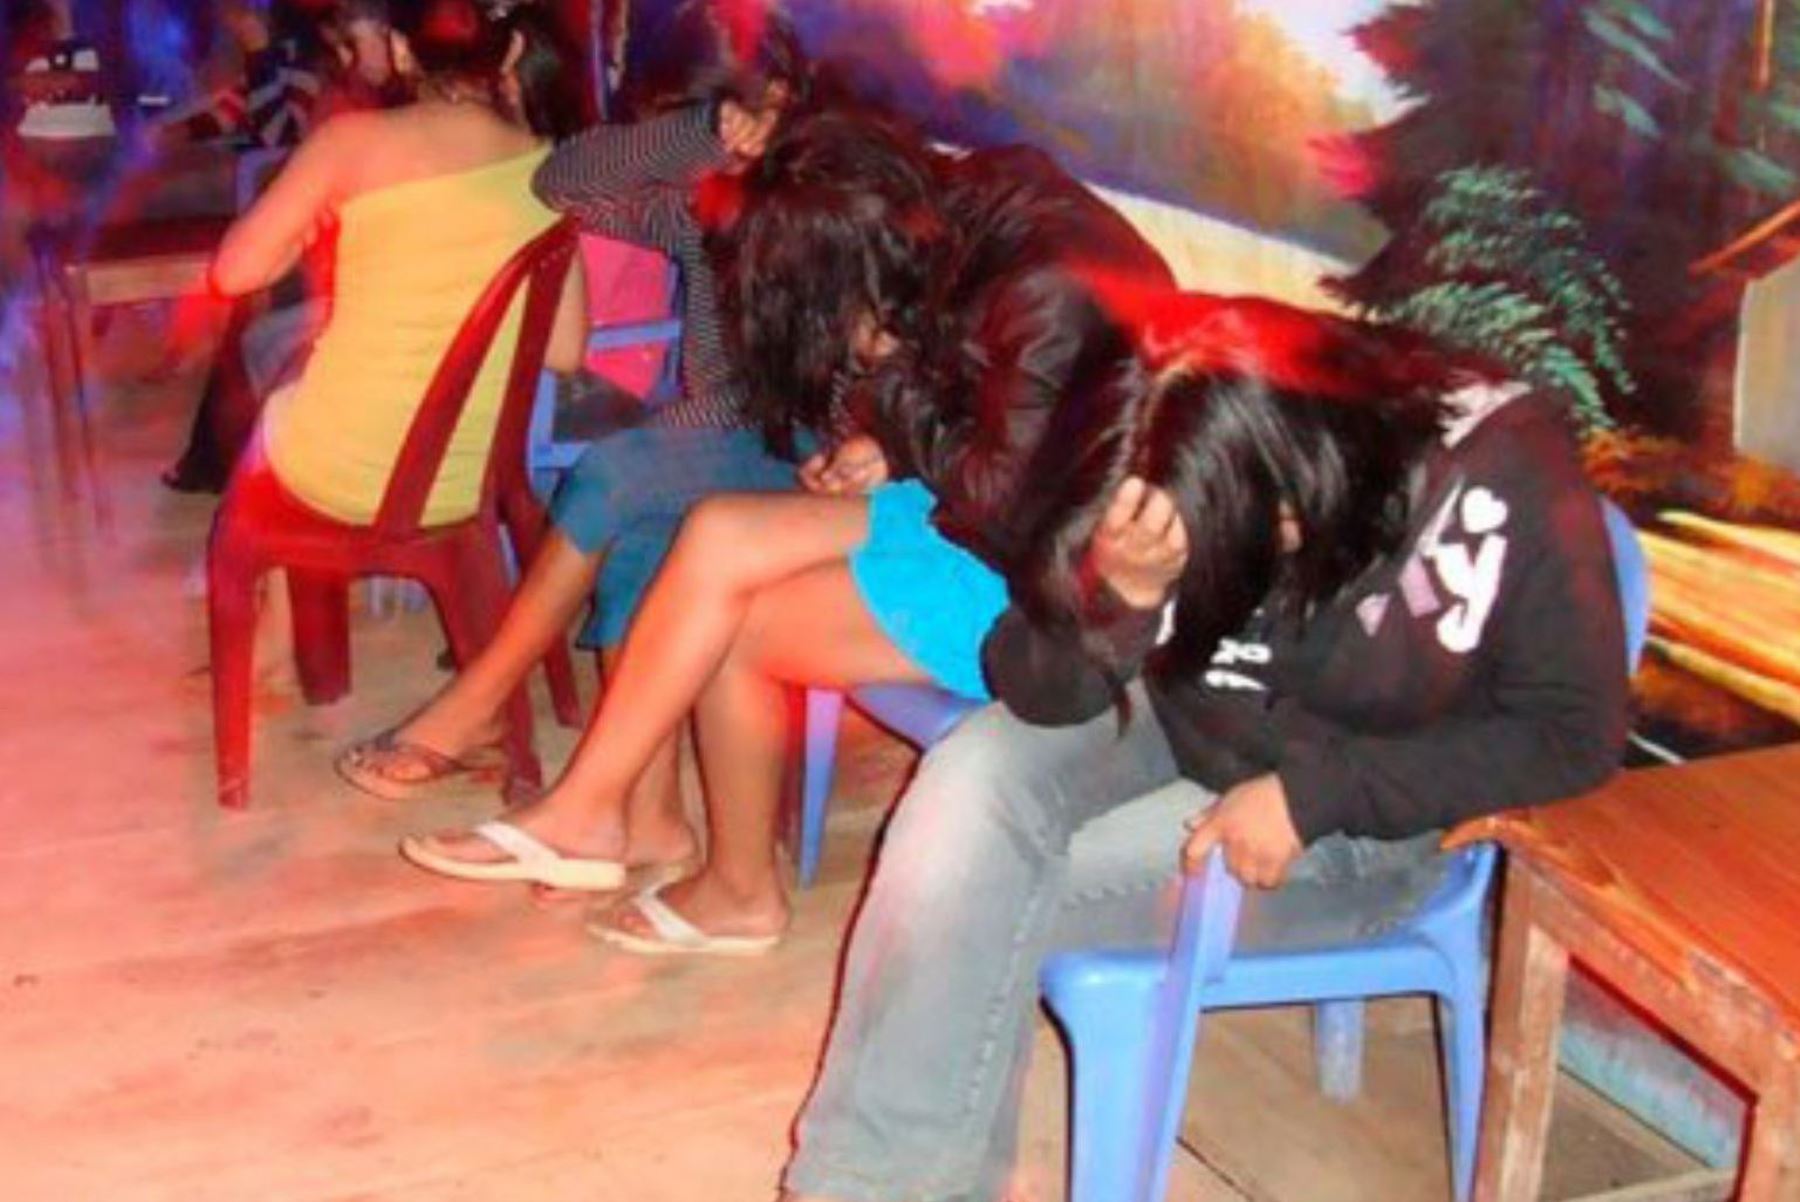 La Policía Nacional del Perú rescató a más de 50 mujeres víctimas de trata de personas con fines de explotación sexual y laboral, durante una intervención en 16 locales nocturnos de la localidad de Mazuco, en la región Madre de Dios. Foto: ANDINA/Difusión.